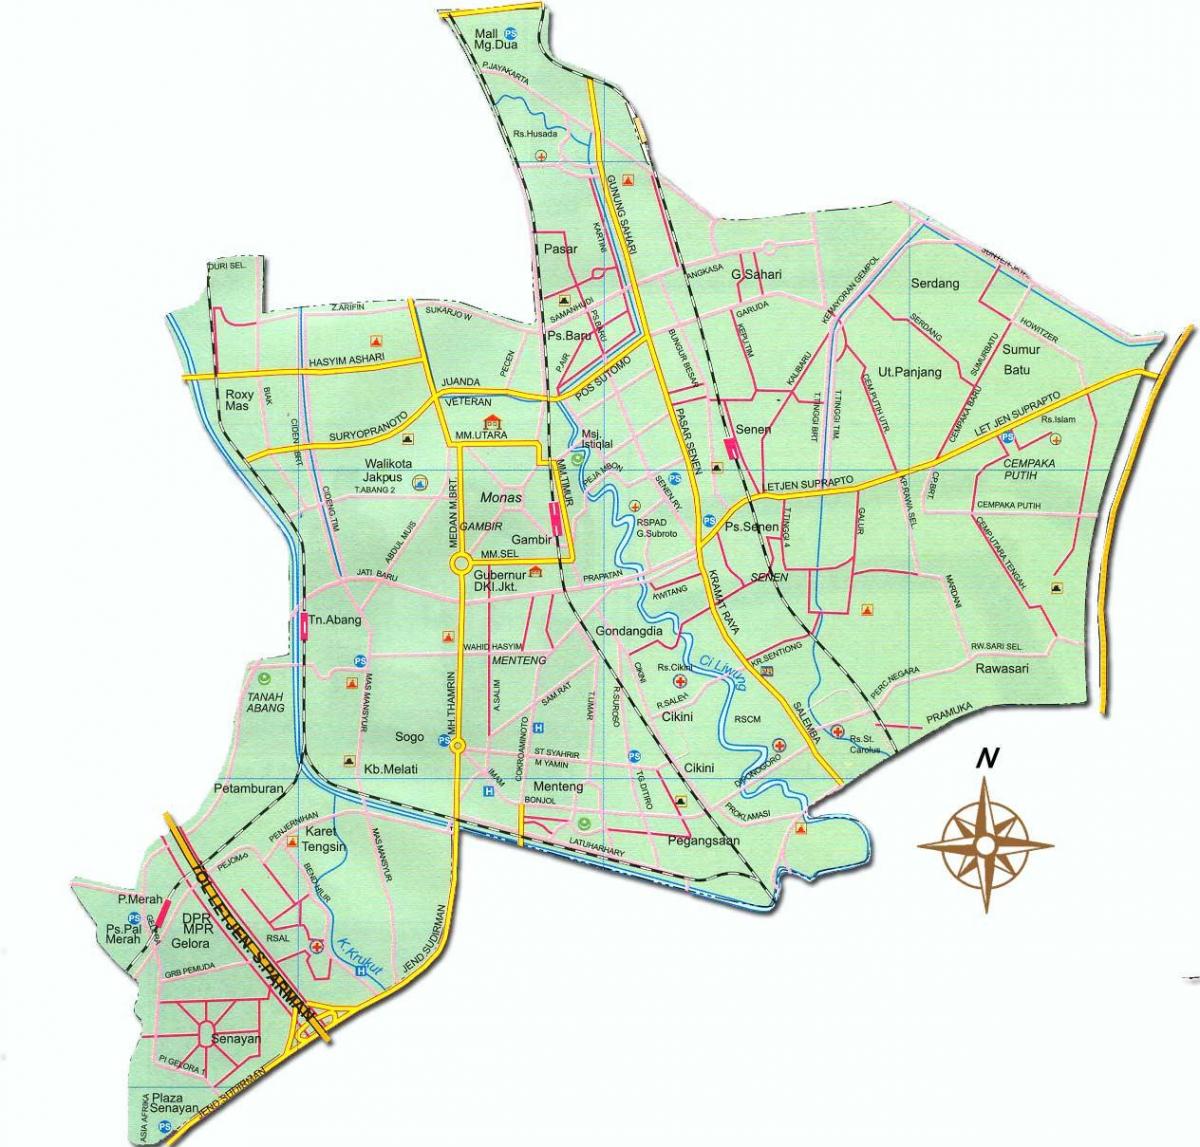 Karte von Jakarta pusat